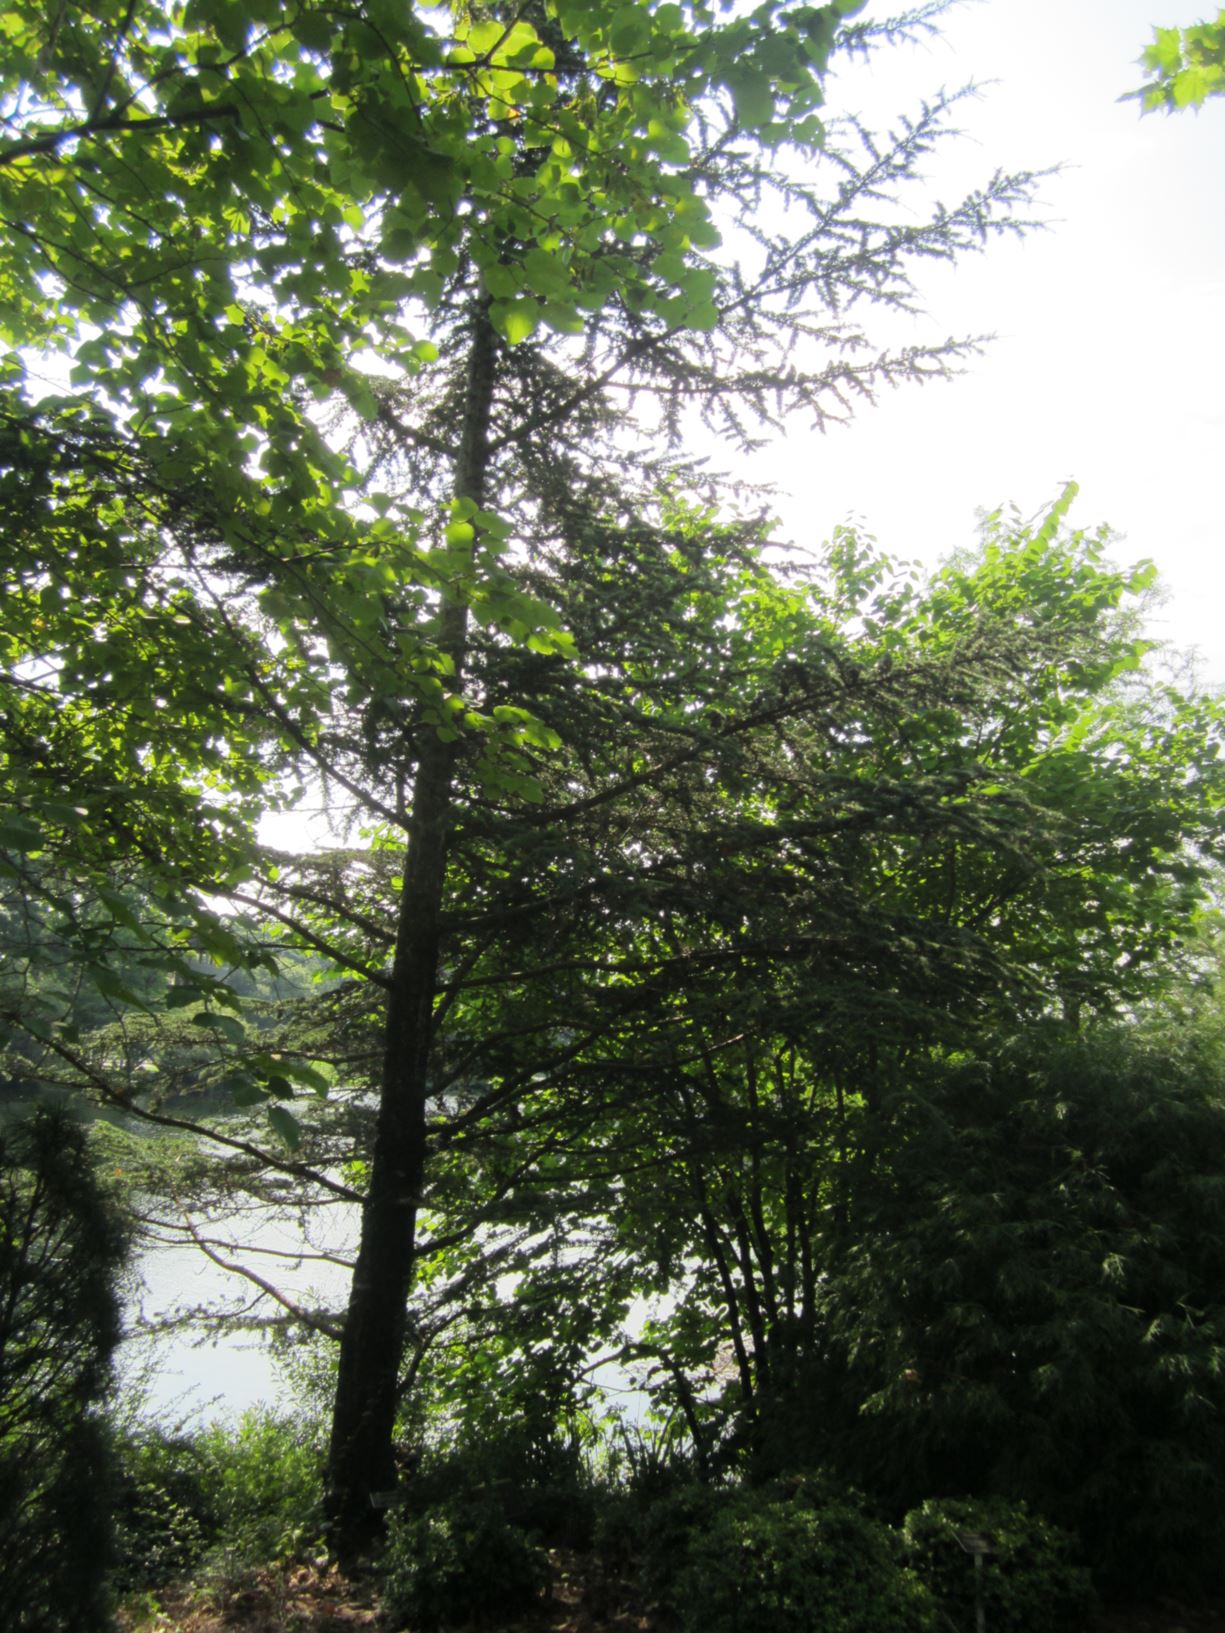 Cedrus libani subsp. brevifolia - Cypriot cedar